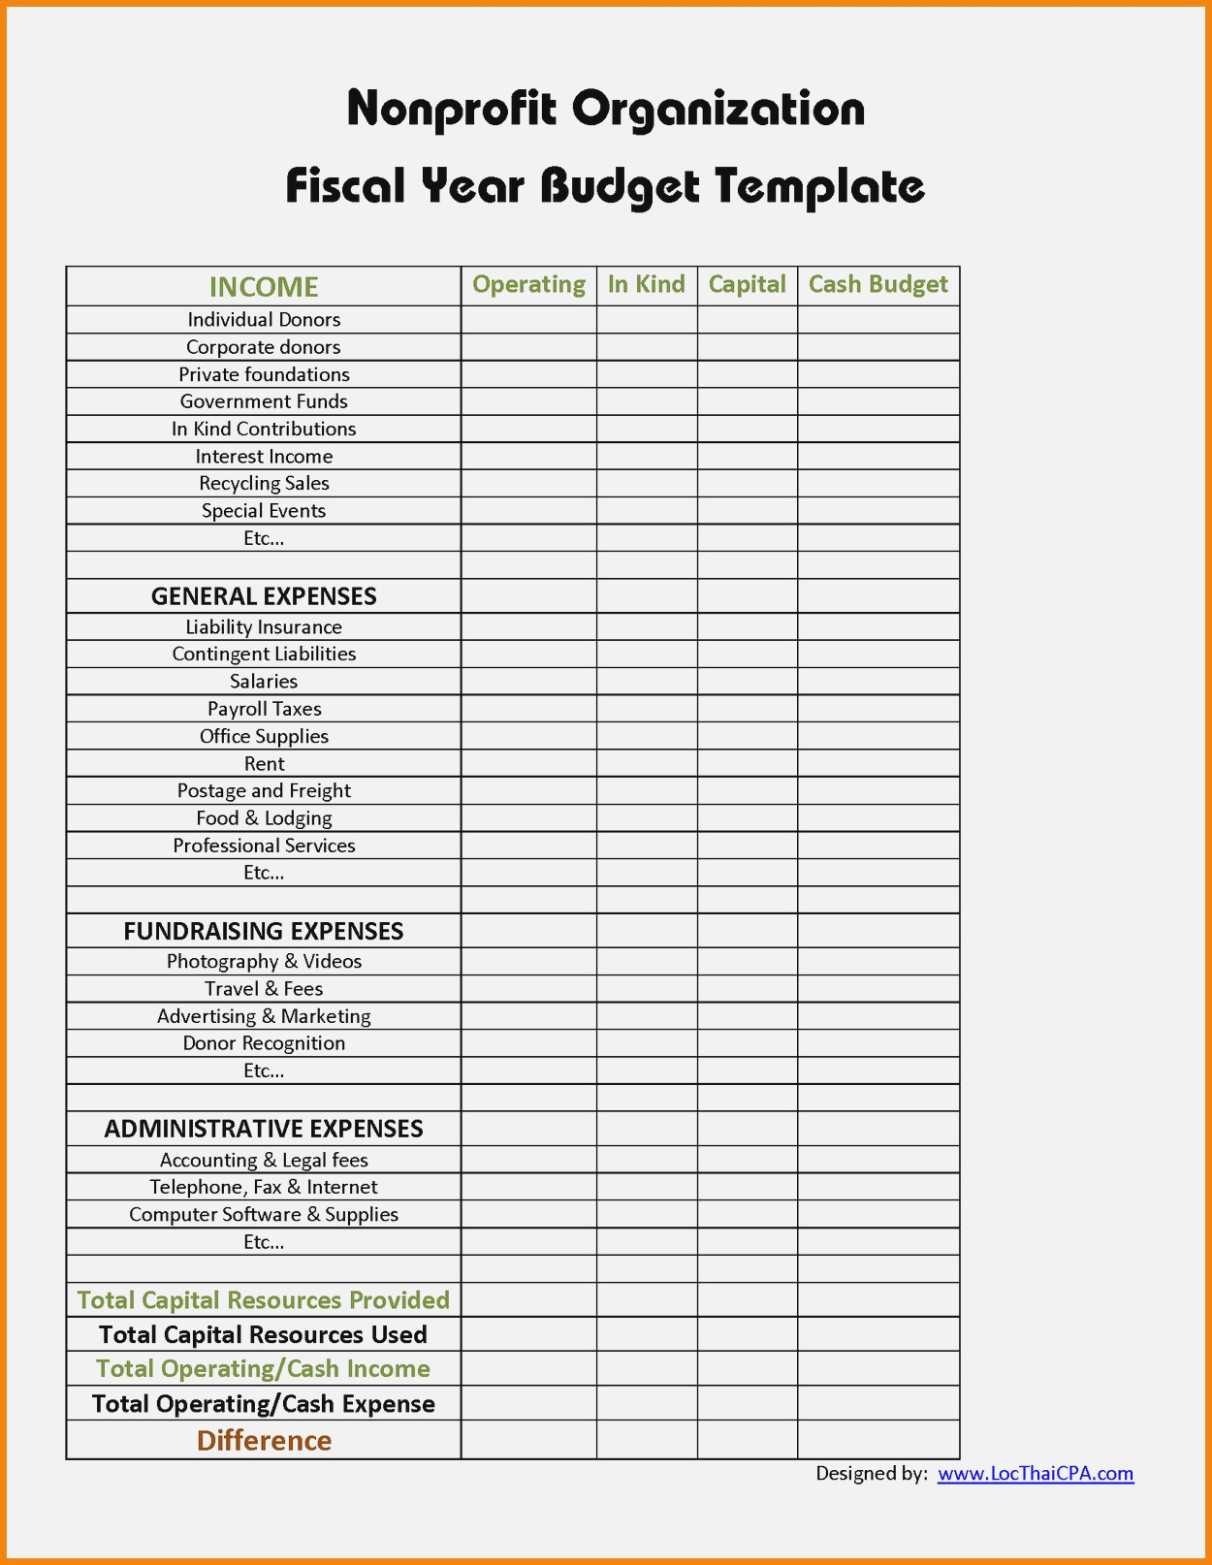 10 Treasurers Report Template | Resume Samples For Fundraising Report Template